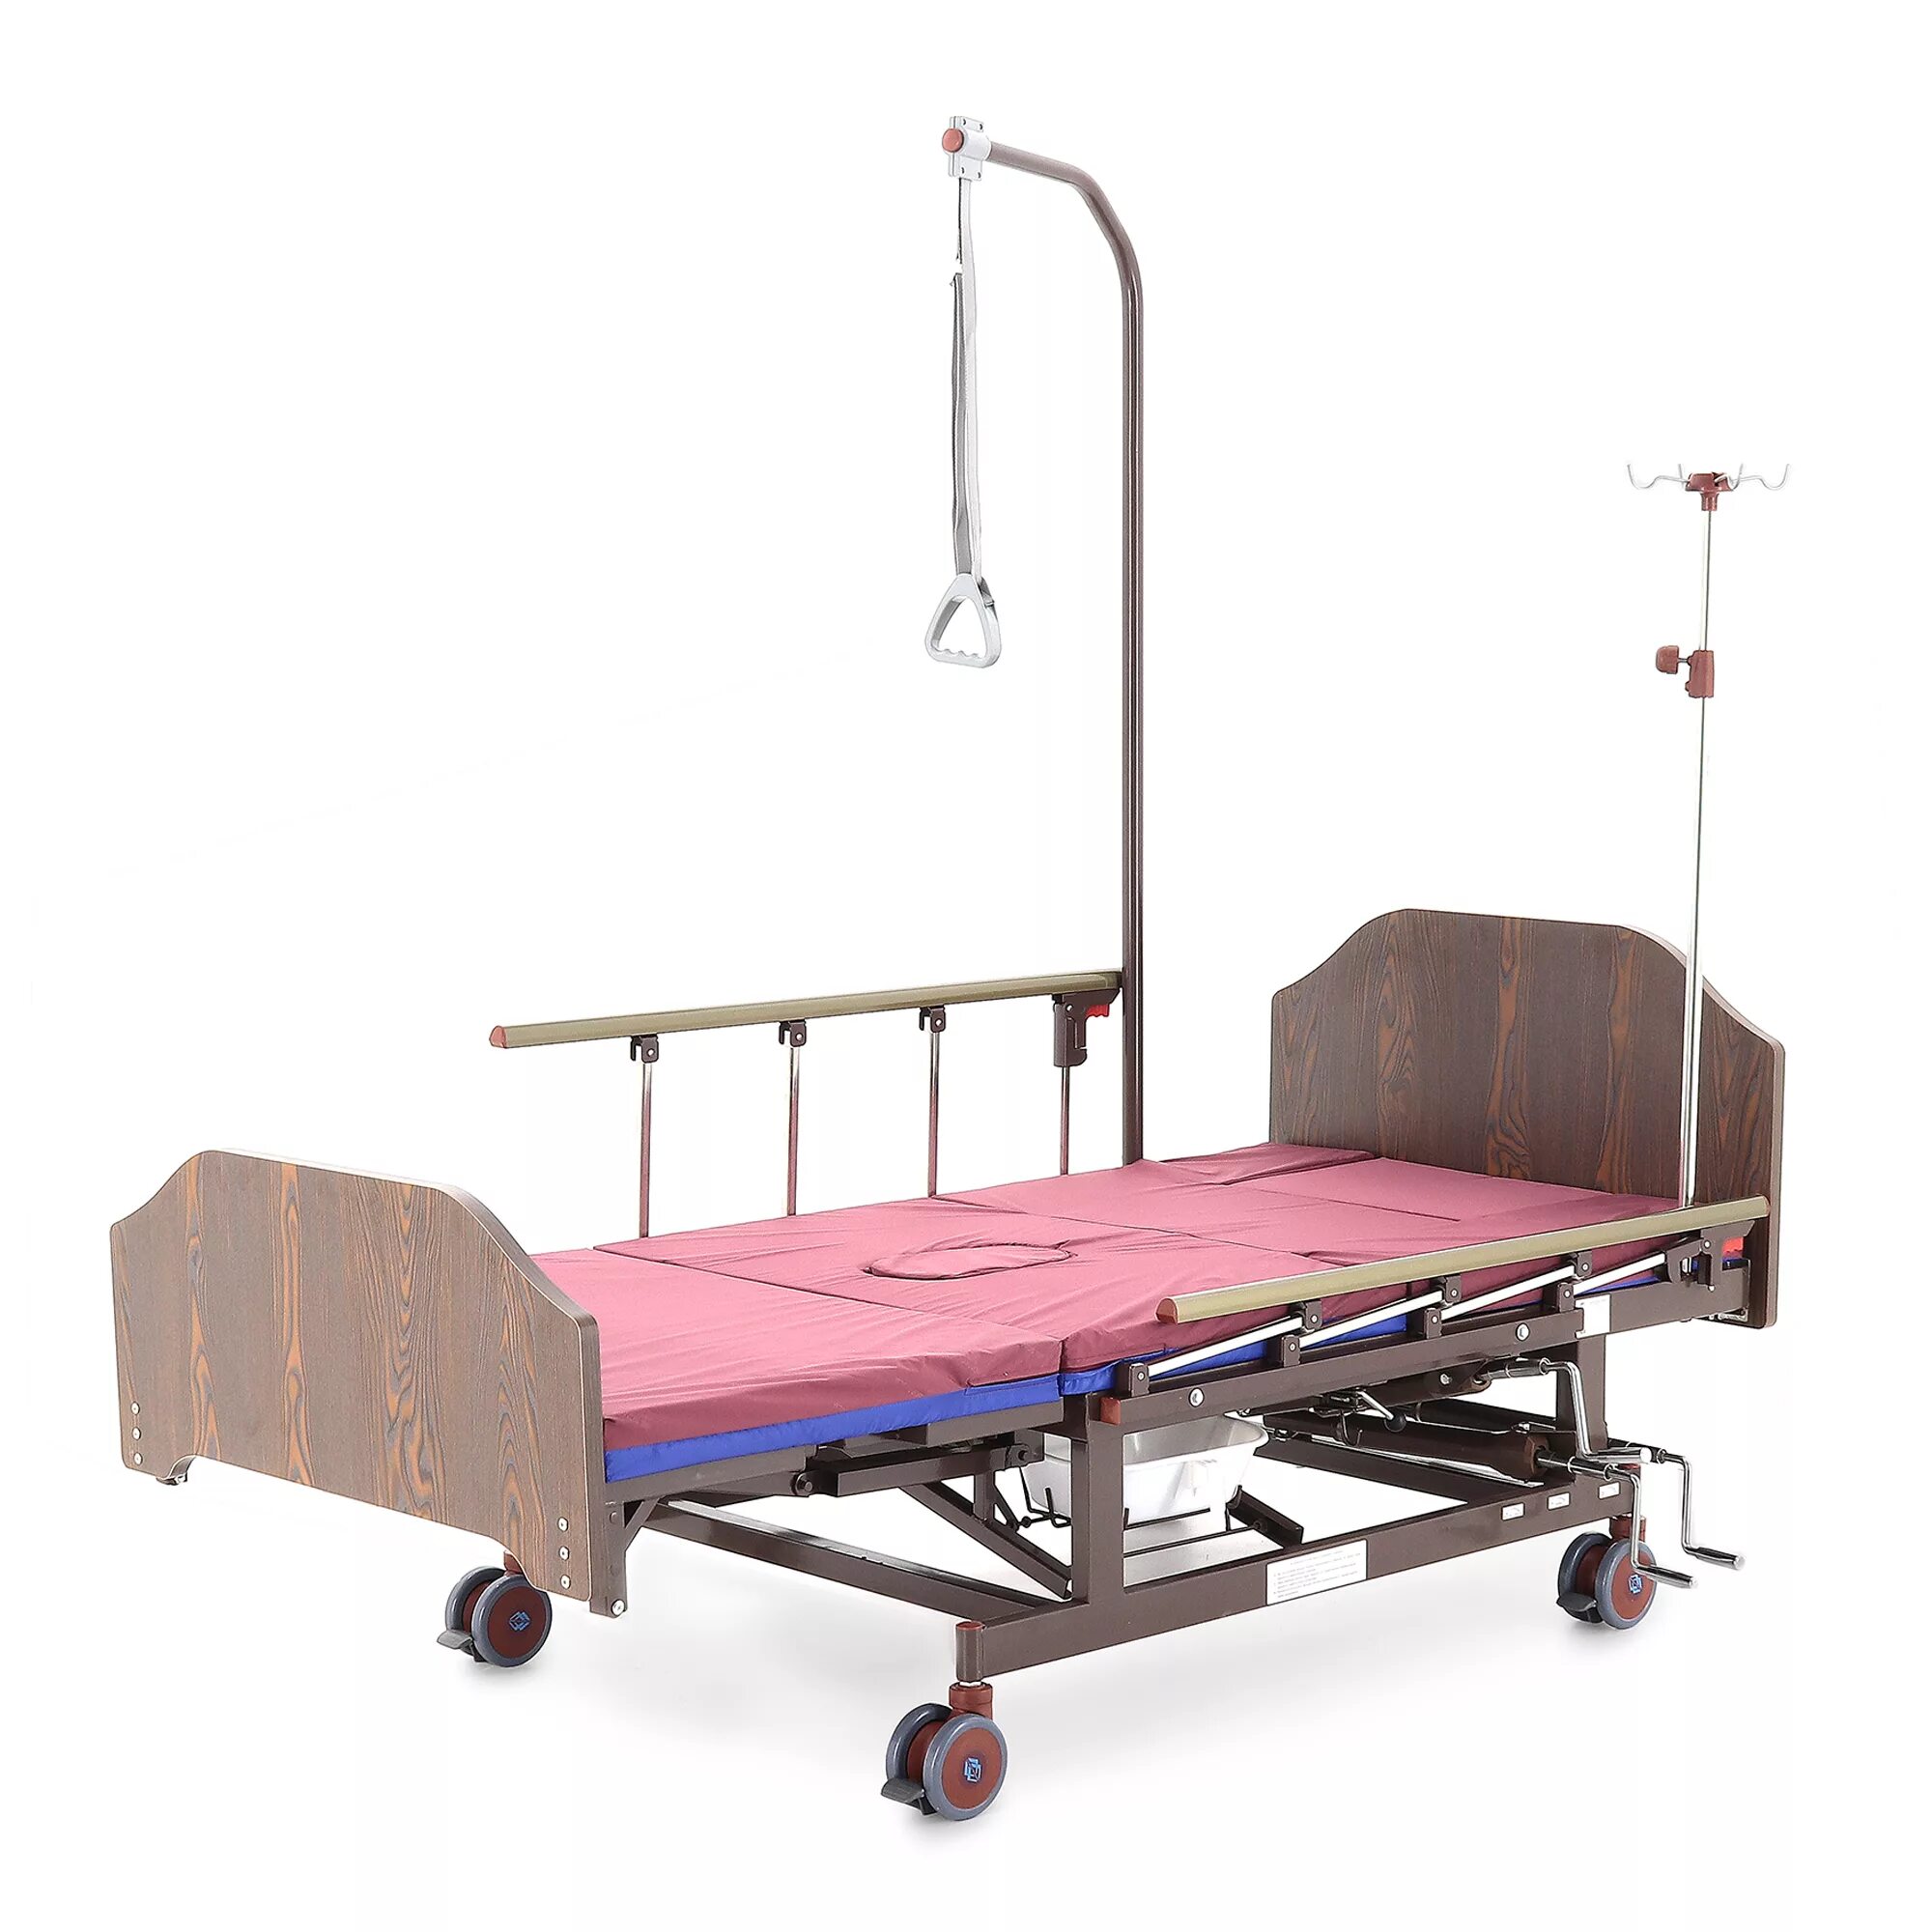 Механическая кровать med-mos e-45a. Кровать функциональная е-45а мм-5124н-13. Медицинская кровать е-45а. Кровать функциональная медицинская механическая yg-5. Авито купить медицинскую кровать для лежачих больных